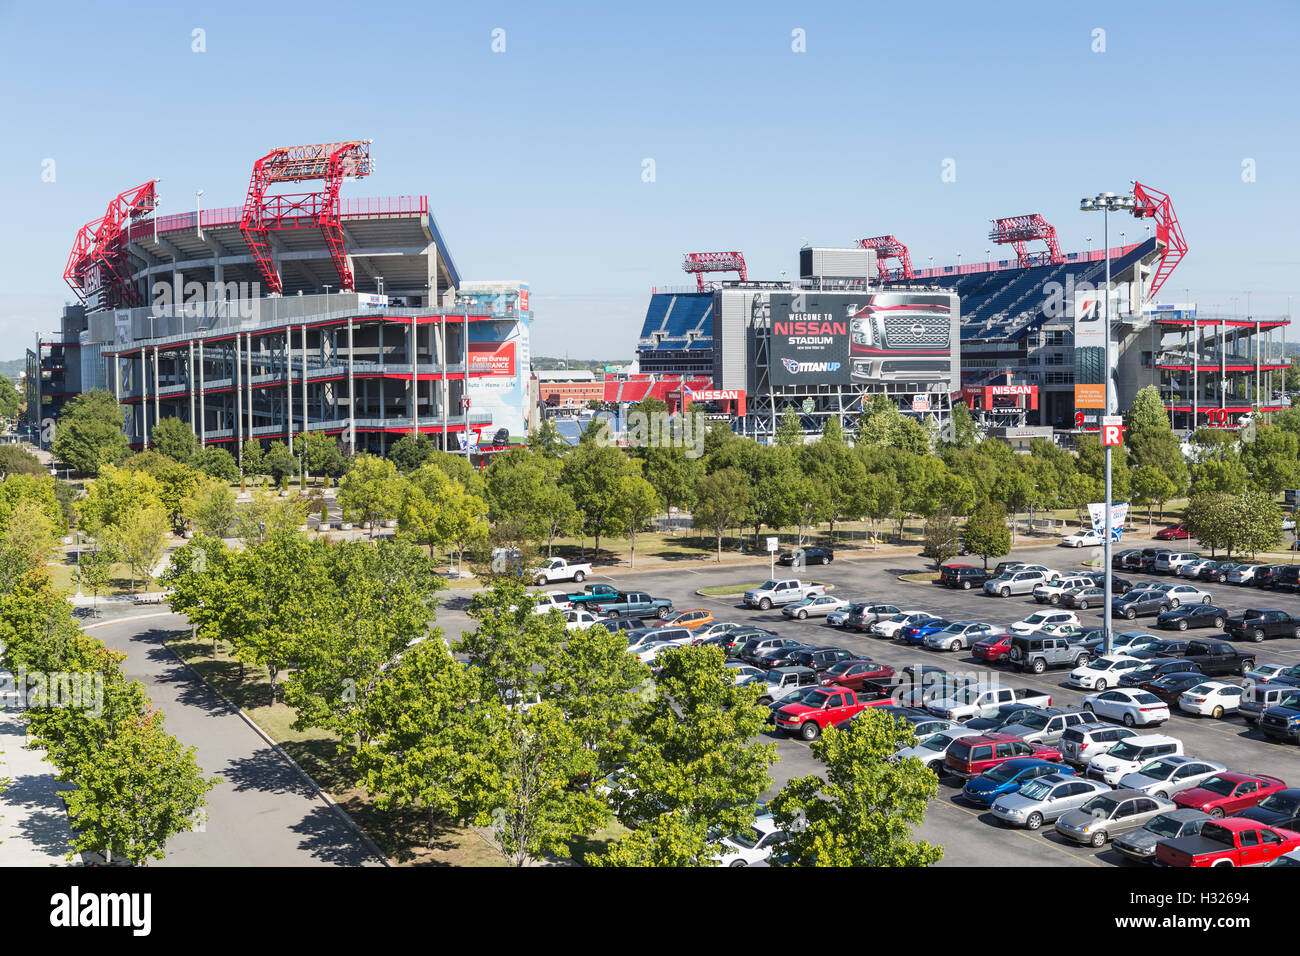 Nissan Stadium in Nashville, Tennessee. Stock Photo